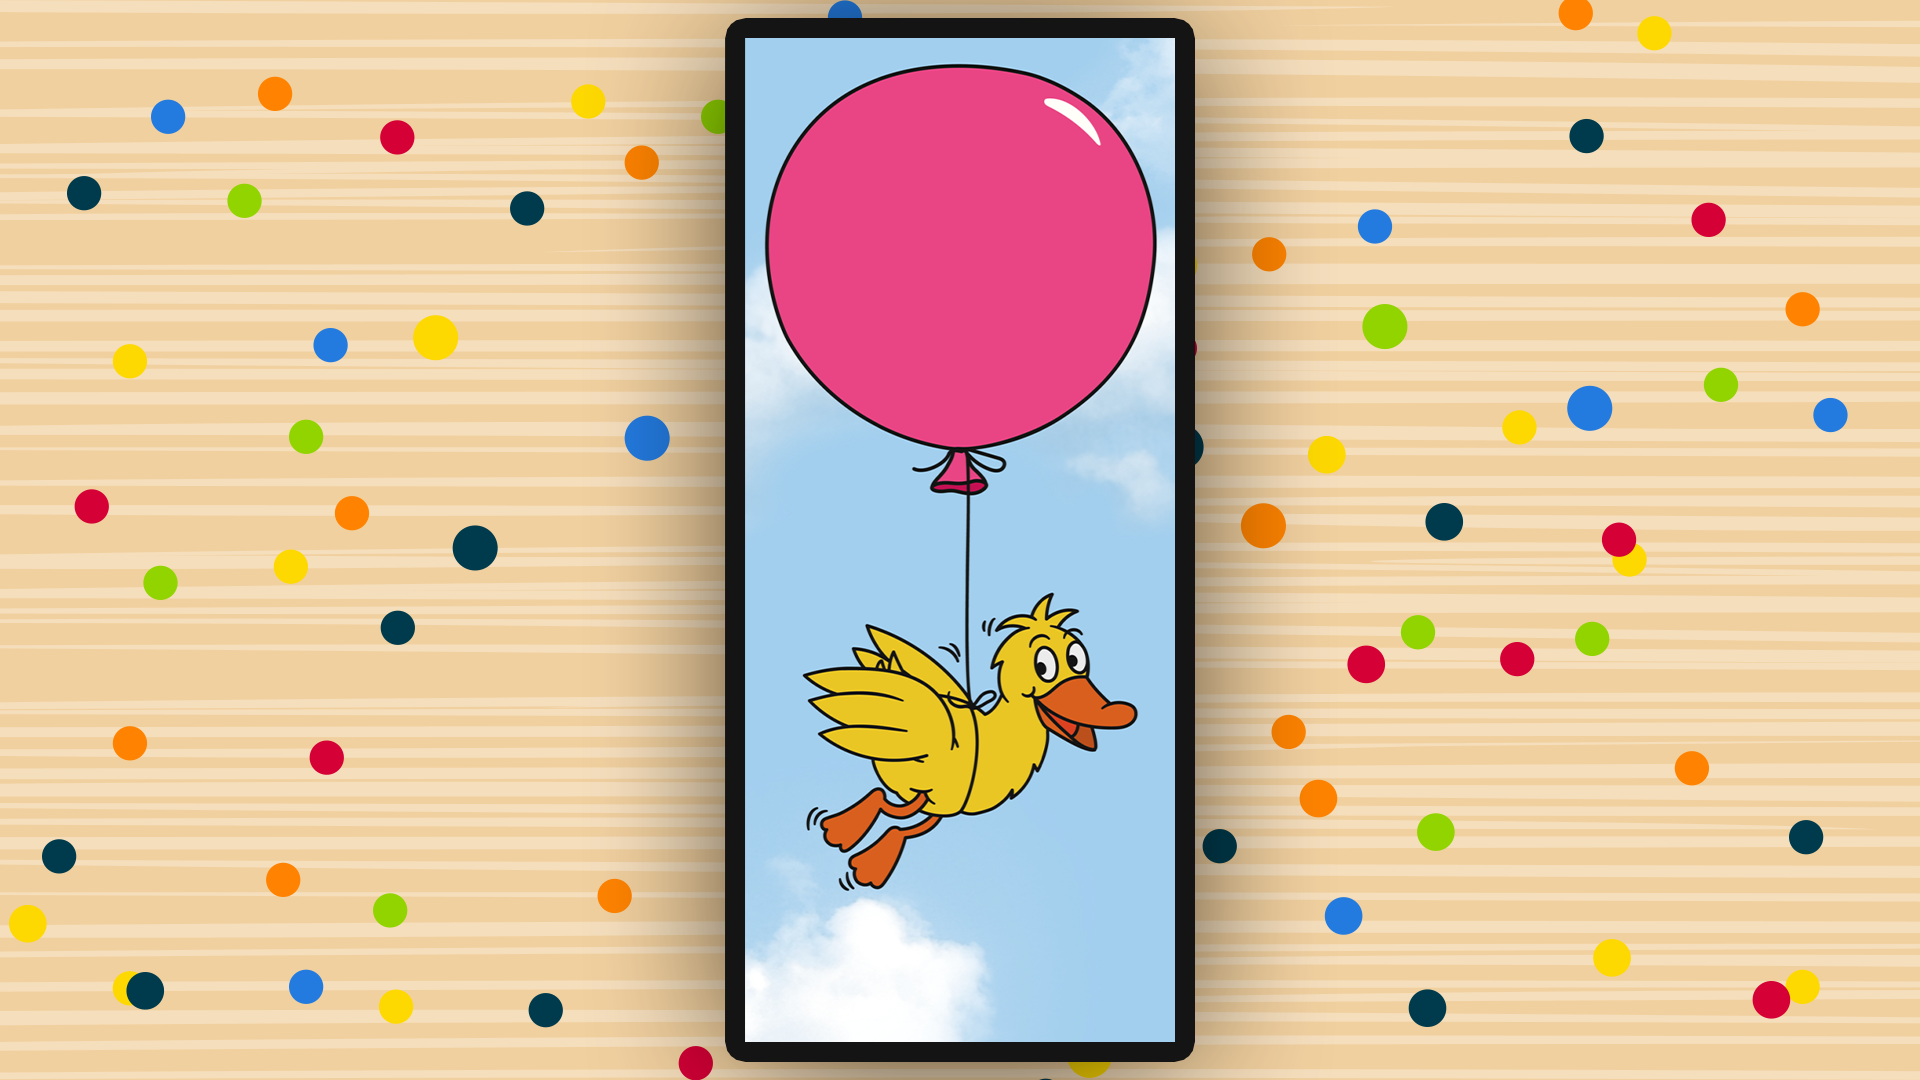 Die Ente fliegt mithilfe eines roten Ballons